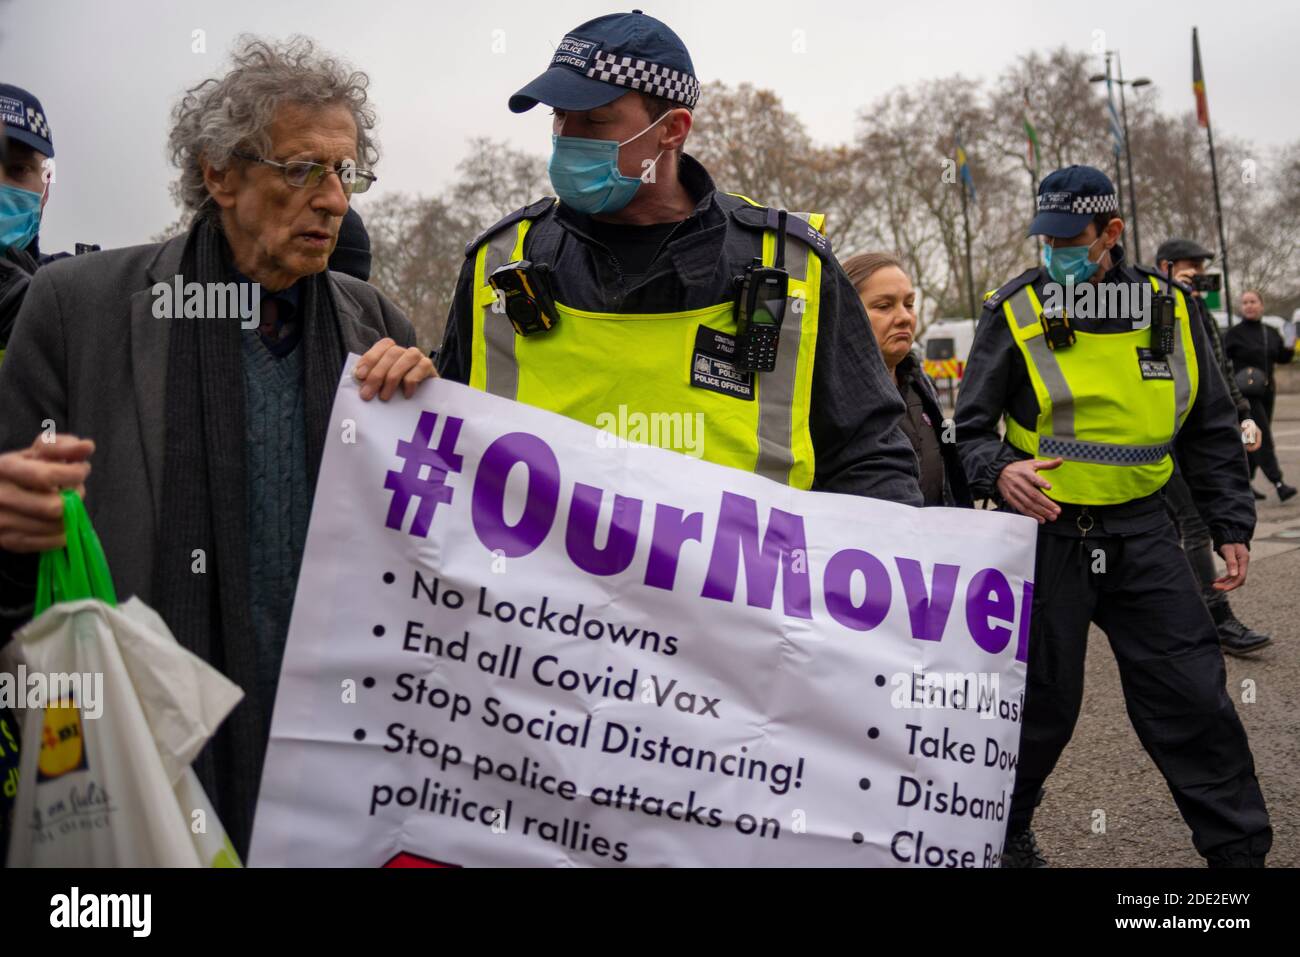 Marble Arch, Londra, Regno Unito. 28 Nov 2020. Si sta svolgendo una protesta contro le restrizioni di blocco in vigore per la pandemia di Coronavirus COVID 19. Nonostante la polizia metropolitana abbia rilasciato una dichiarazione per ricordare ai manifestanti che un tale incontro sarebbe illegale durante le attuali normative molti ancora presenti. I manifestanti si sono Uniti a Piers Corbyn al Speaker's Corner e si sono recati. Corbyn fu circondato dalla polizia di Marble Arch nel tentativo di fermare la protesta. Corbyn fu poi arrestato Foto Stock